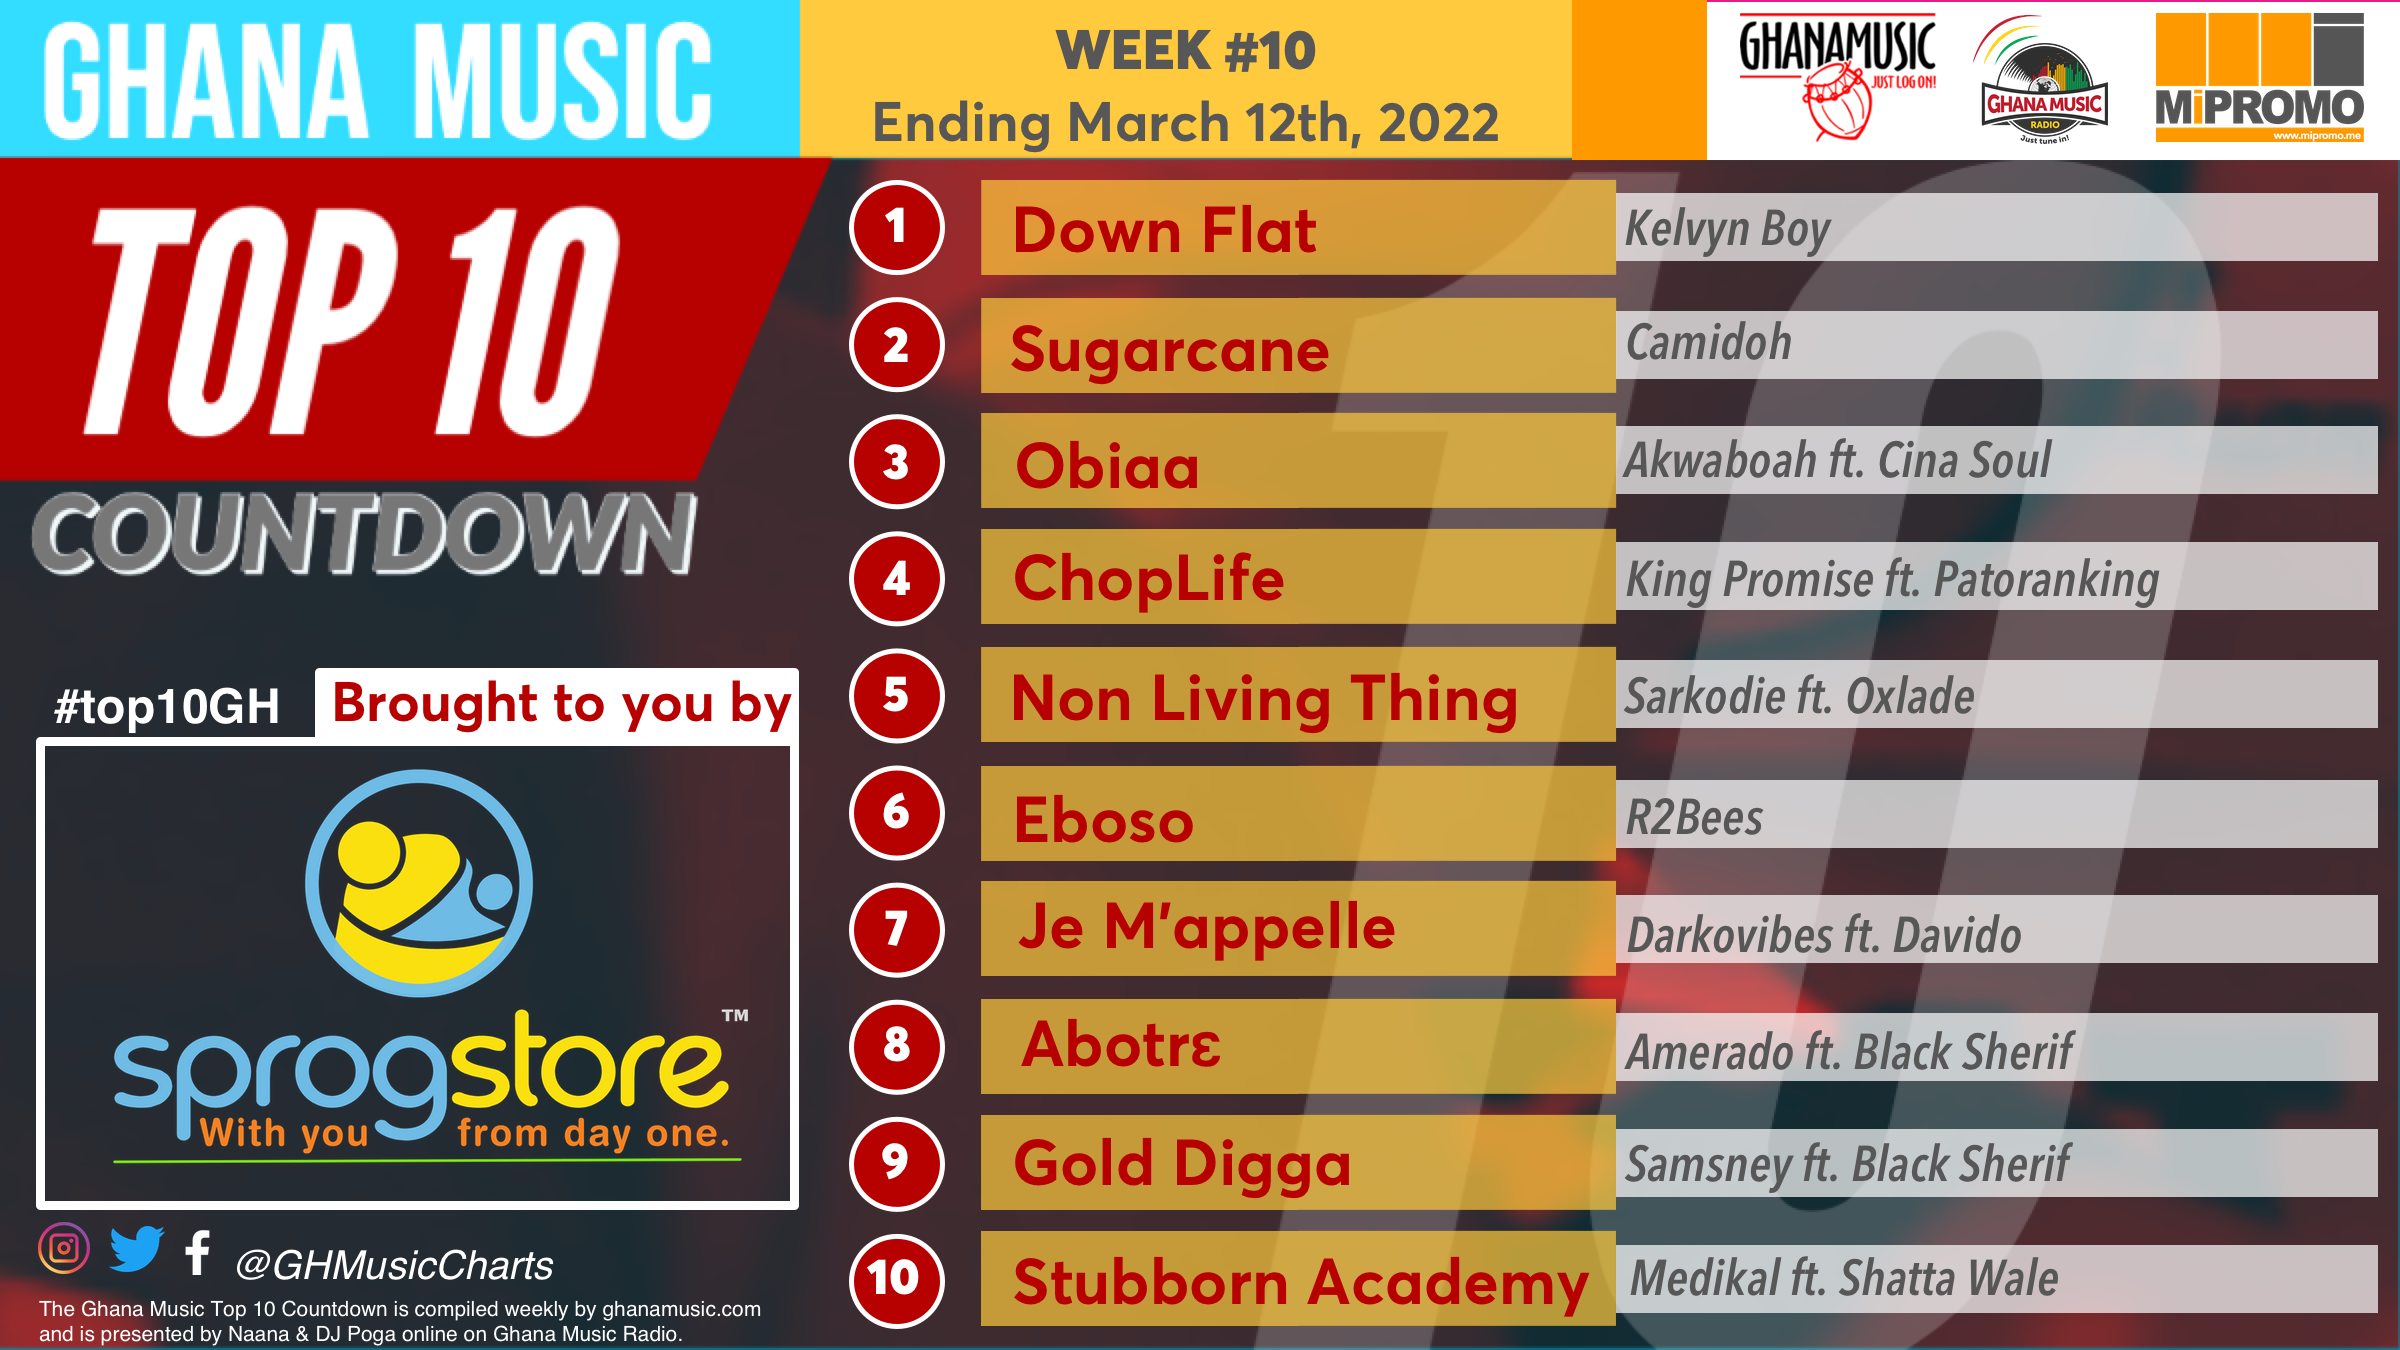 2022 Week 10: Ghana Music Top 10 Countdown